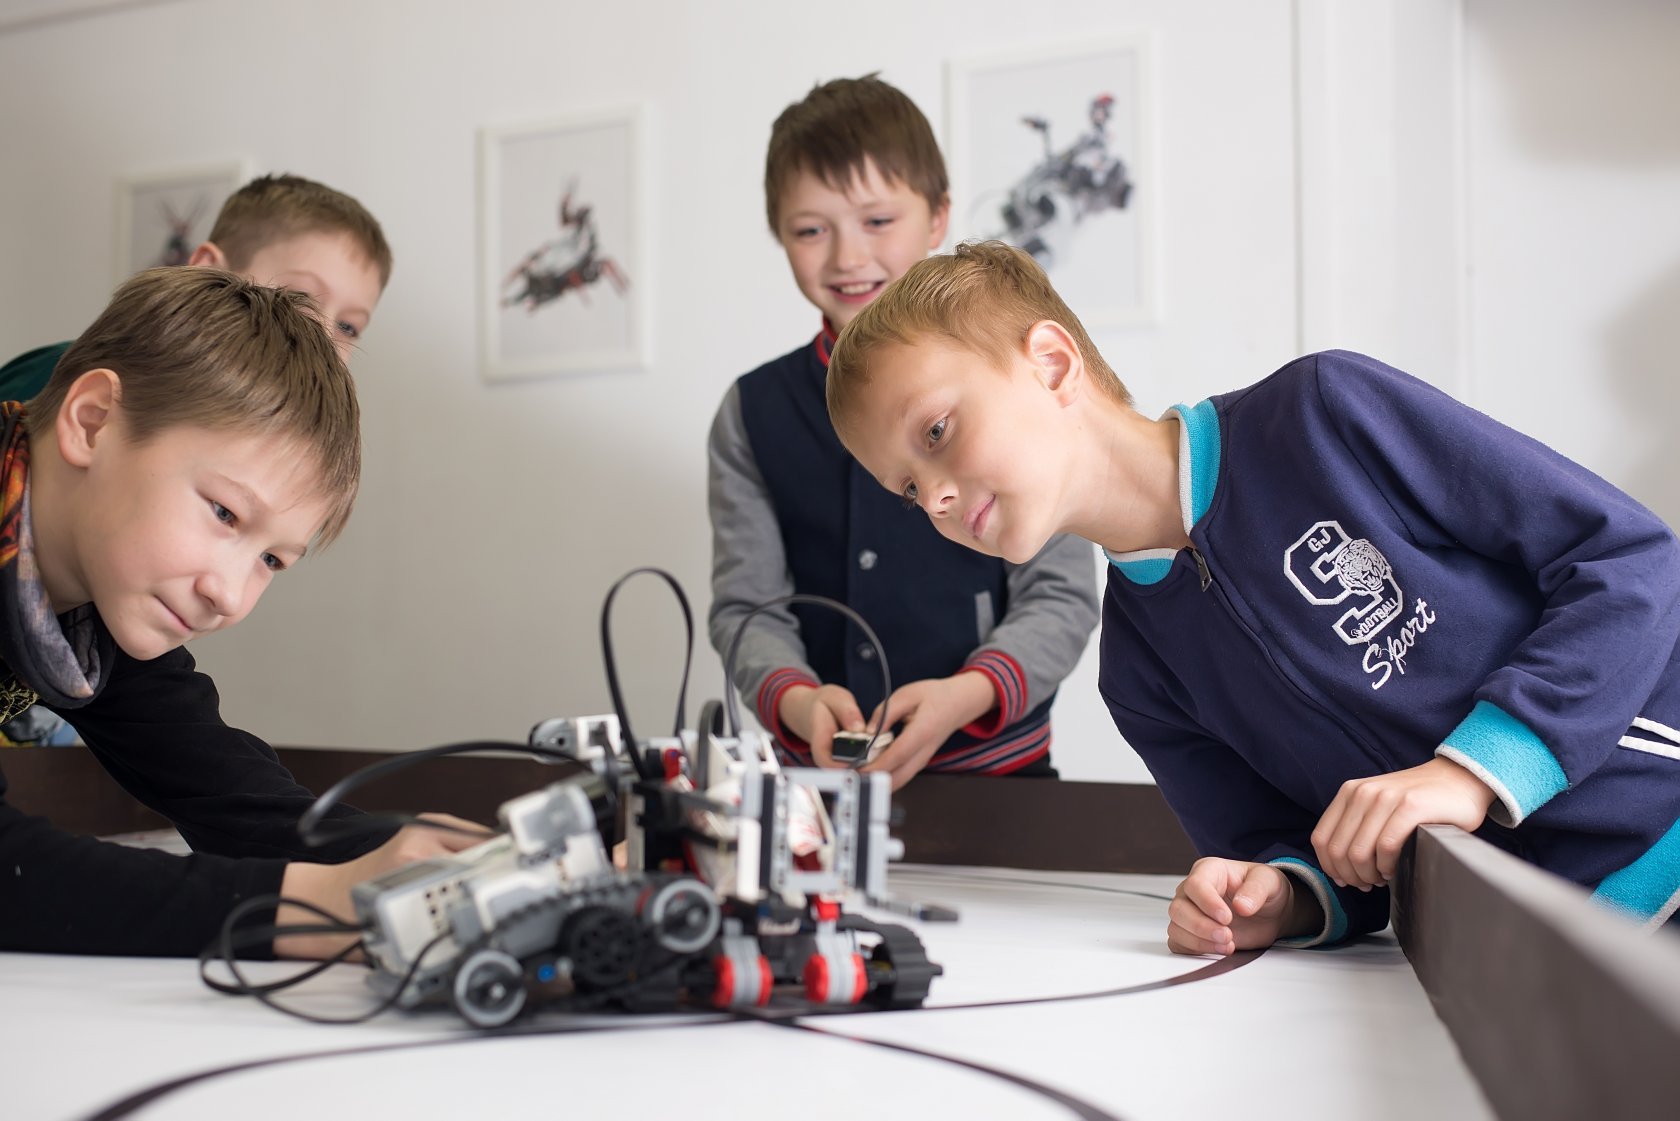 Кружок для ребенка по Робототехнике в Борисове - фотография